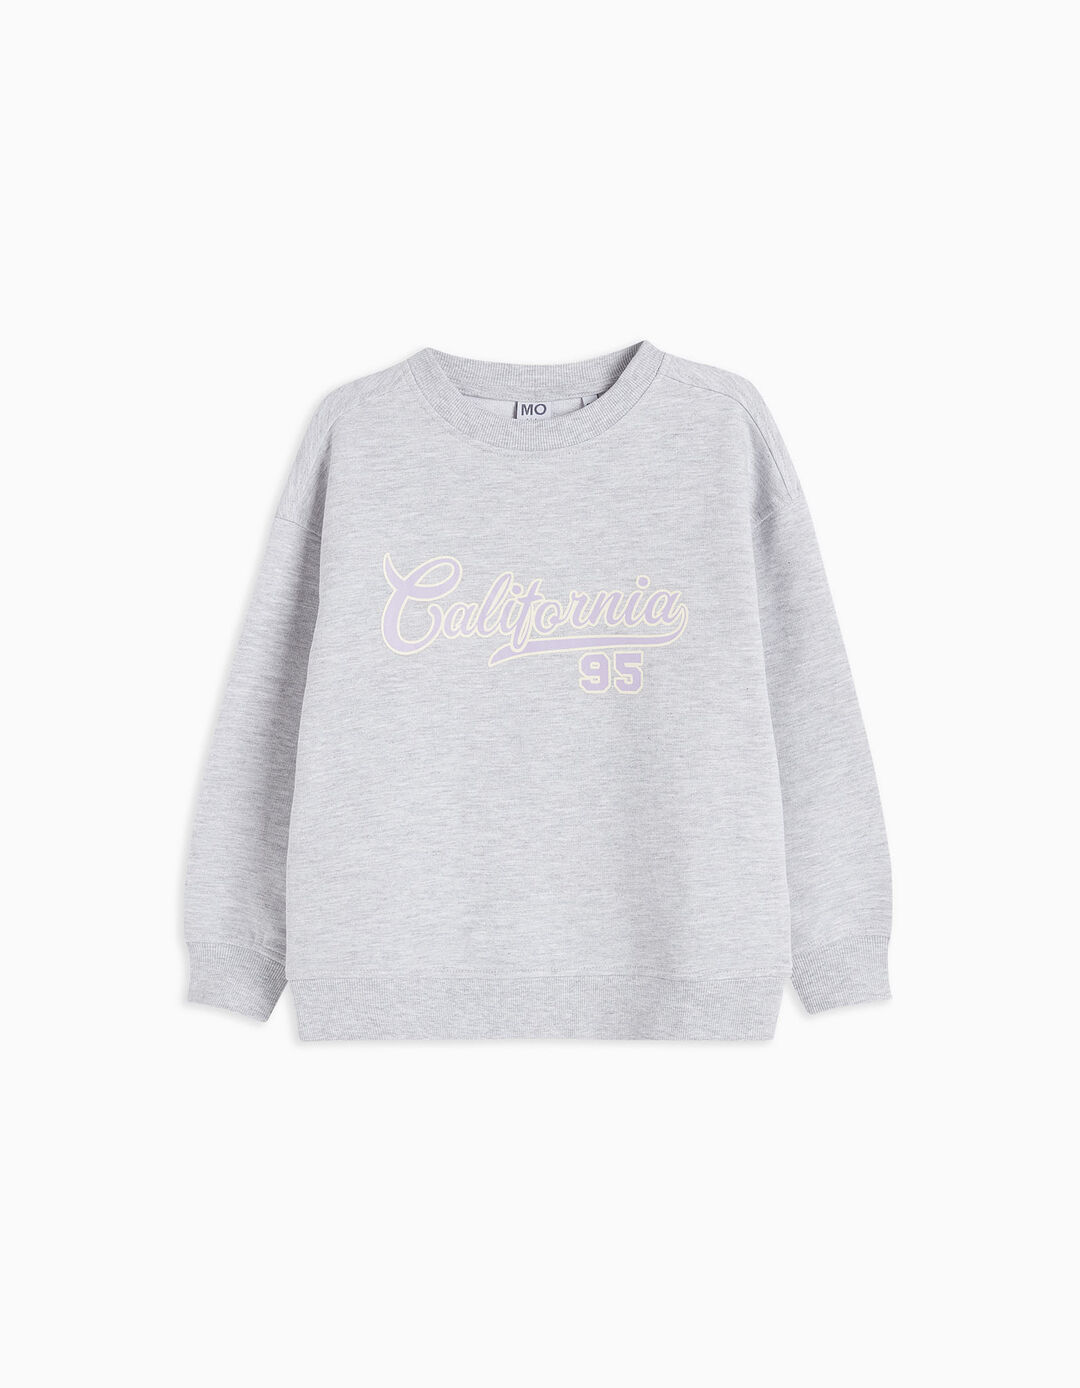 Fleece Sweatshirt, Girls, Light Grey